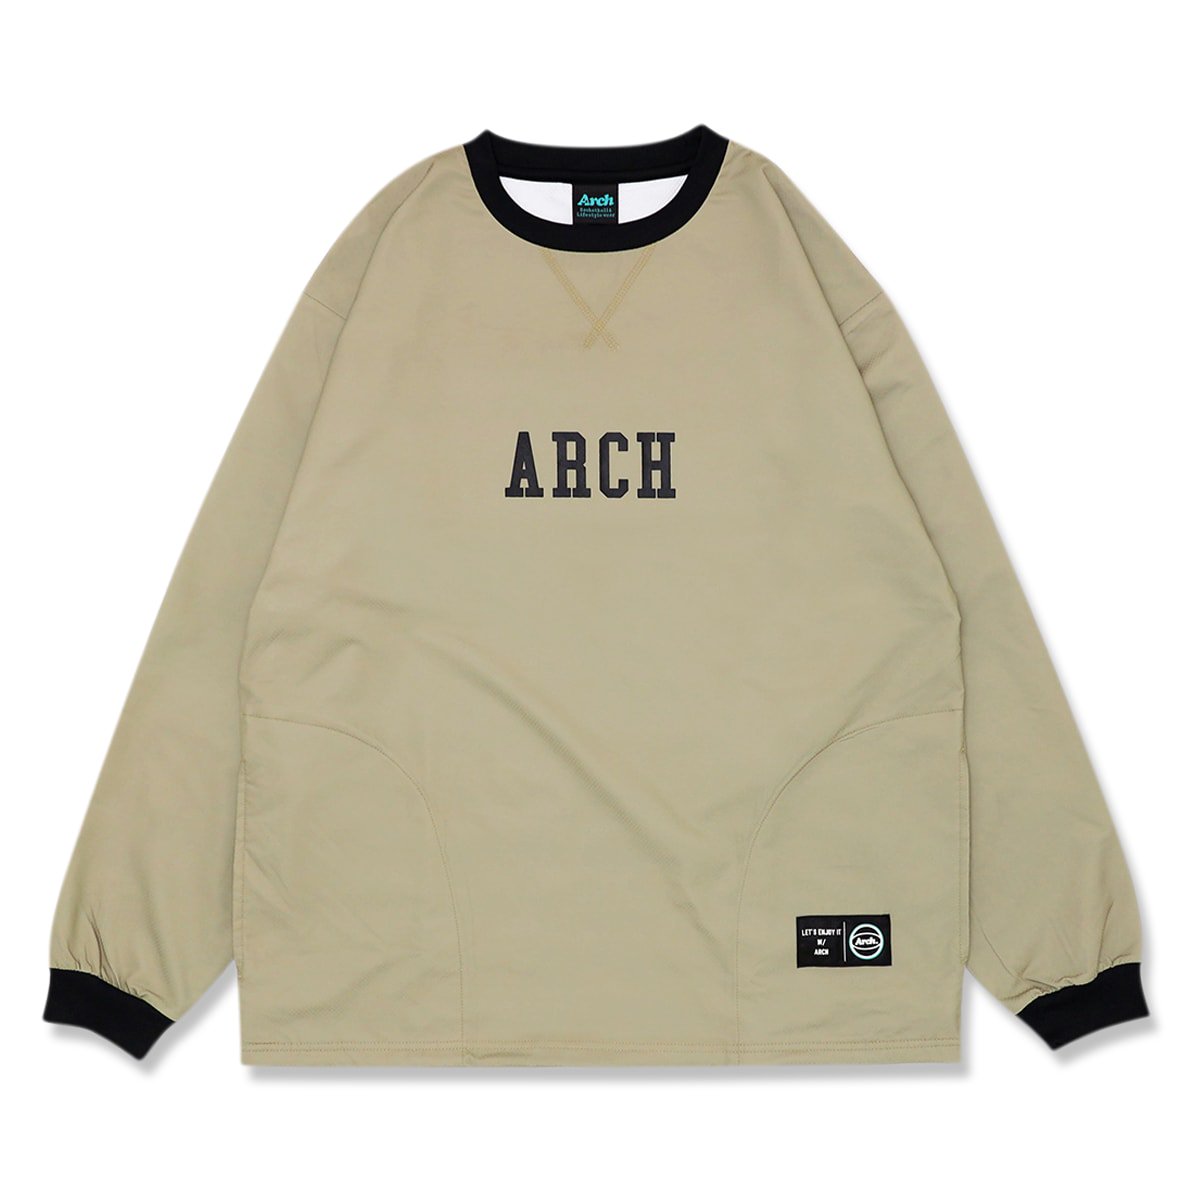 standard wind crewneck shirt【sand】 - Arch ☆ アーチ 